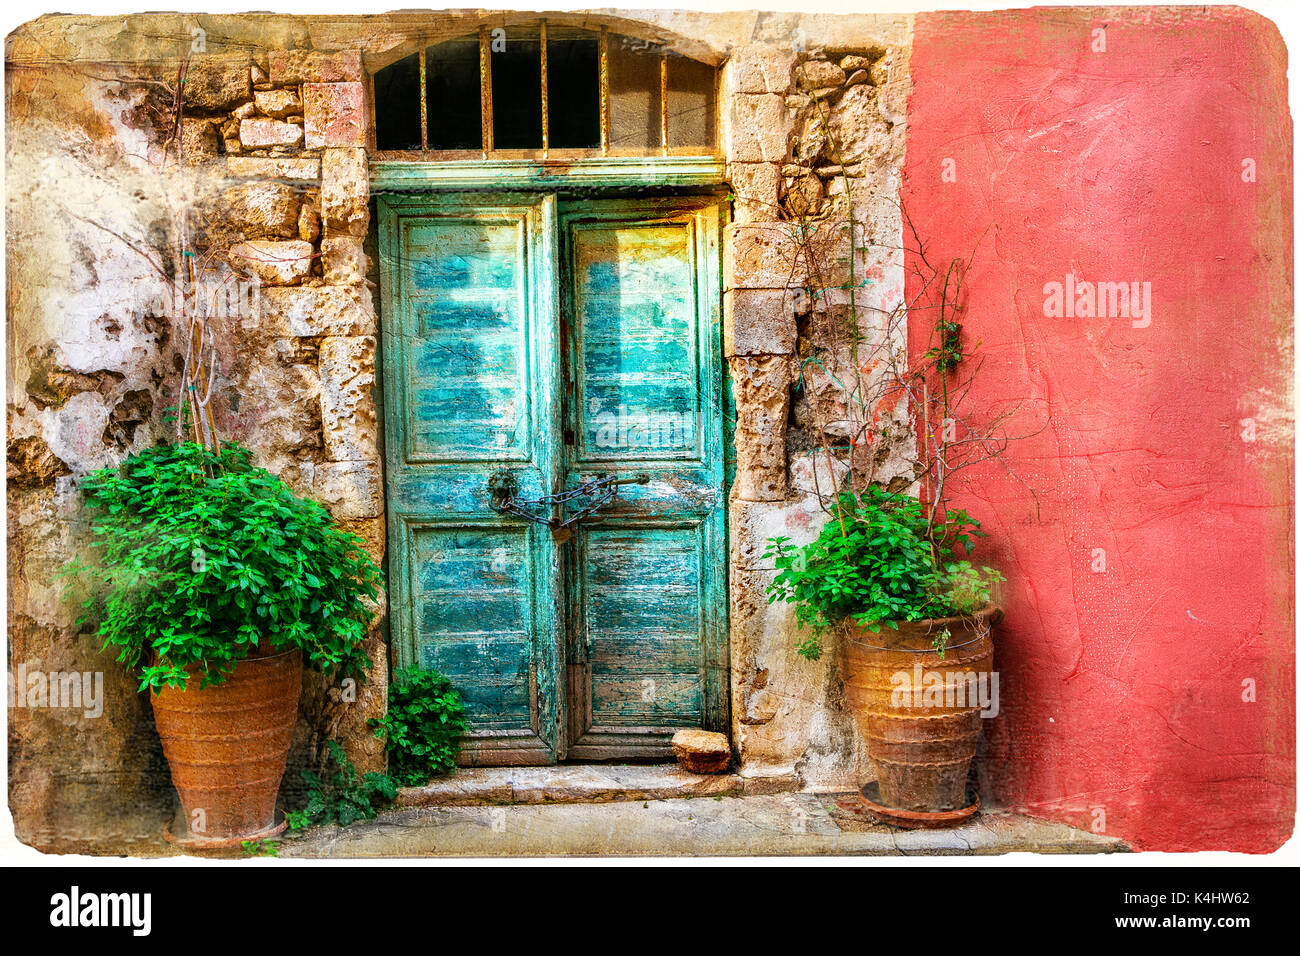 Vieilles rues colorées de charme de la vieille ville de Rethymno en Crète.Grèce Banque D'Images